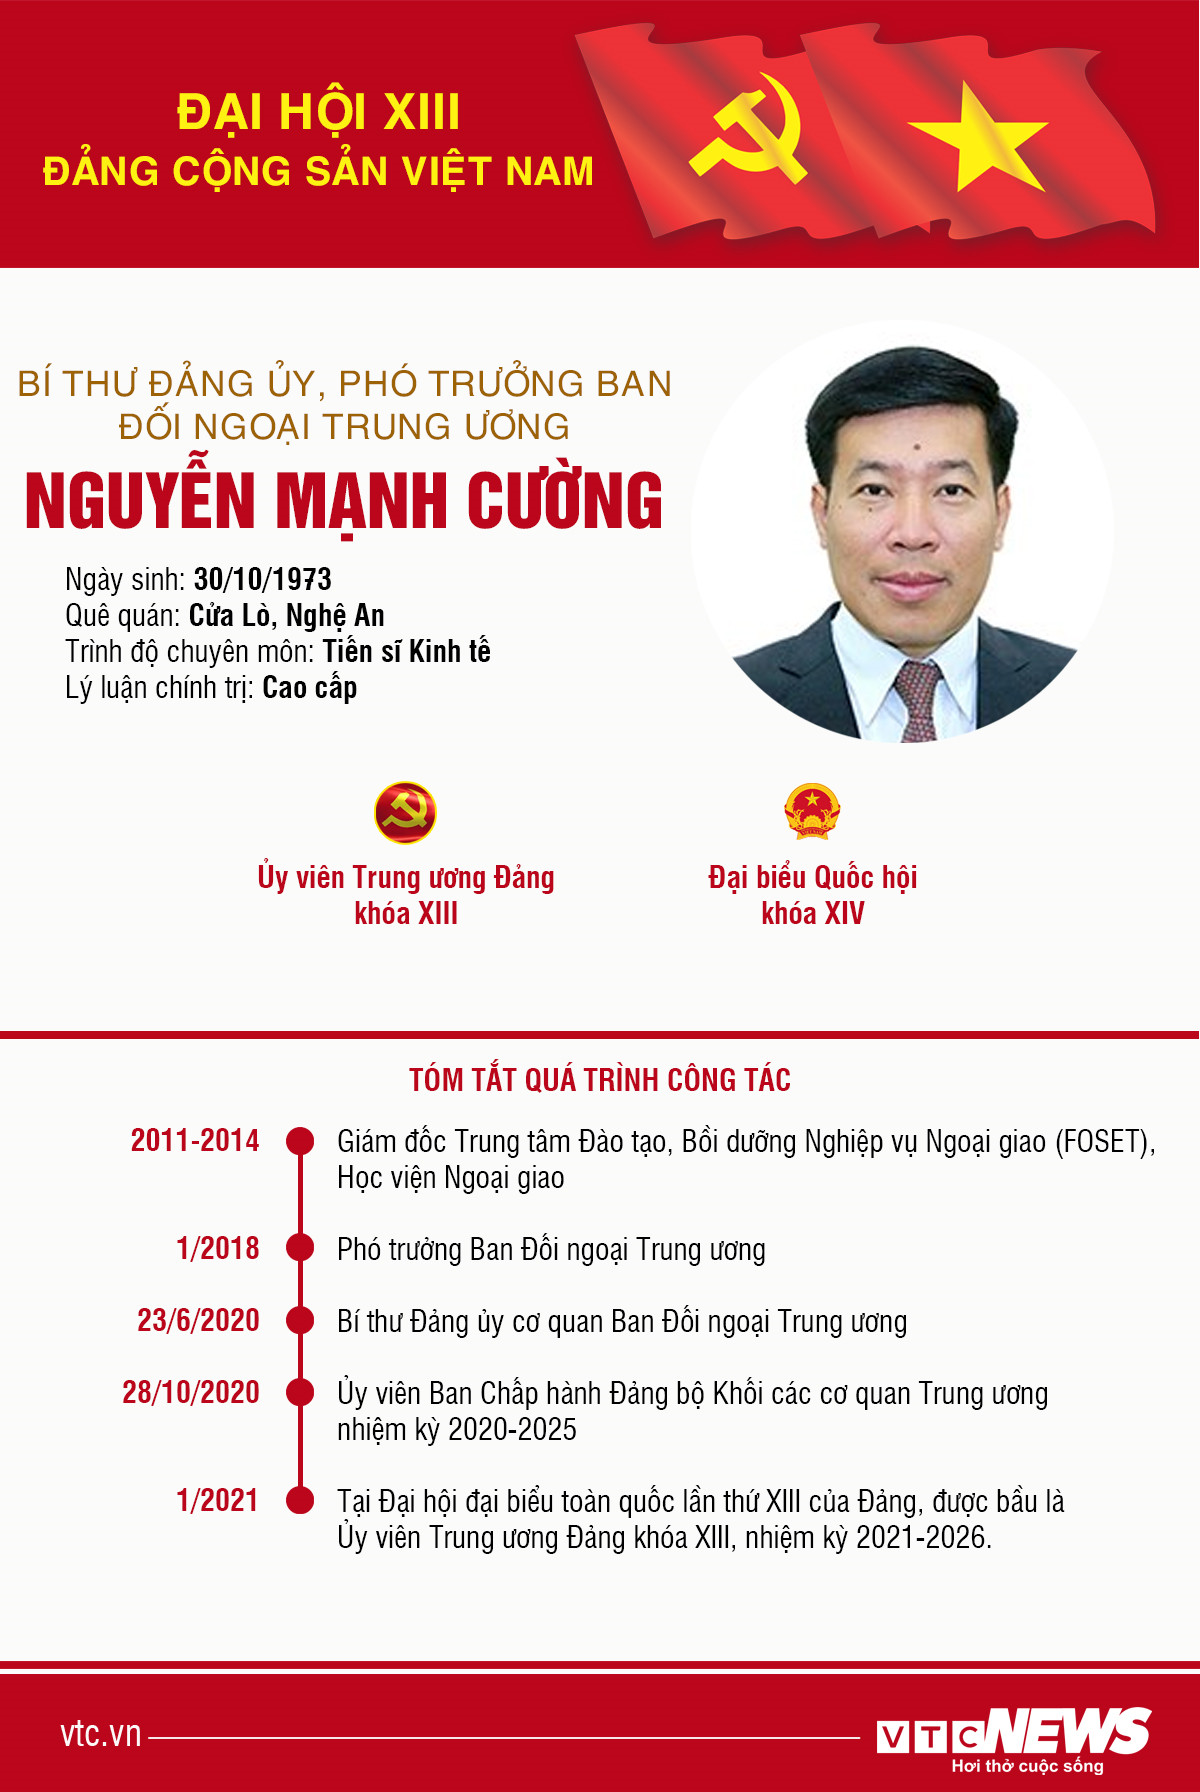 Infographic: Sự nghiệp Phó Trưởng ban Đối ngoại Trung ương Nguyễn Mạnh Cường - 1